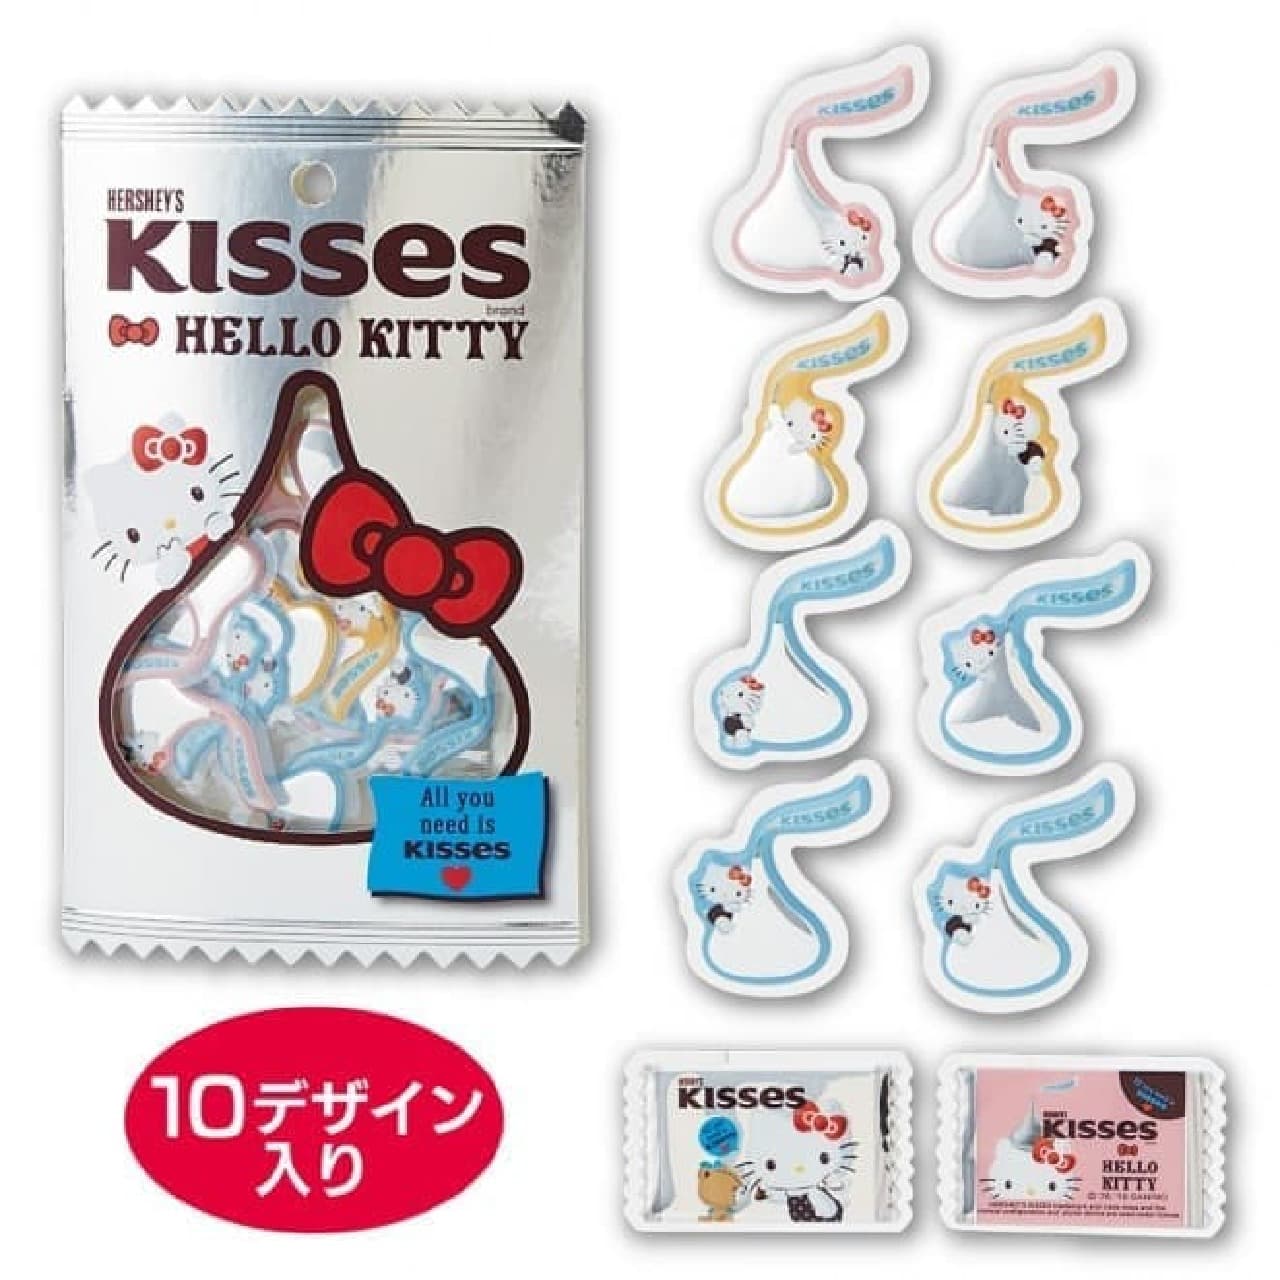 Kiss chocolate and Sanrio collaboration